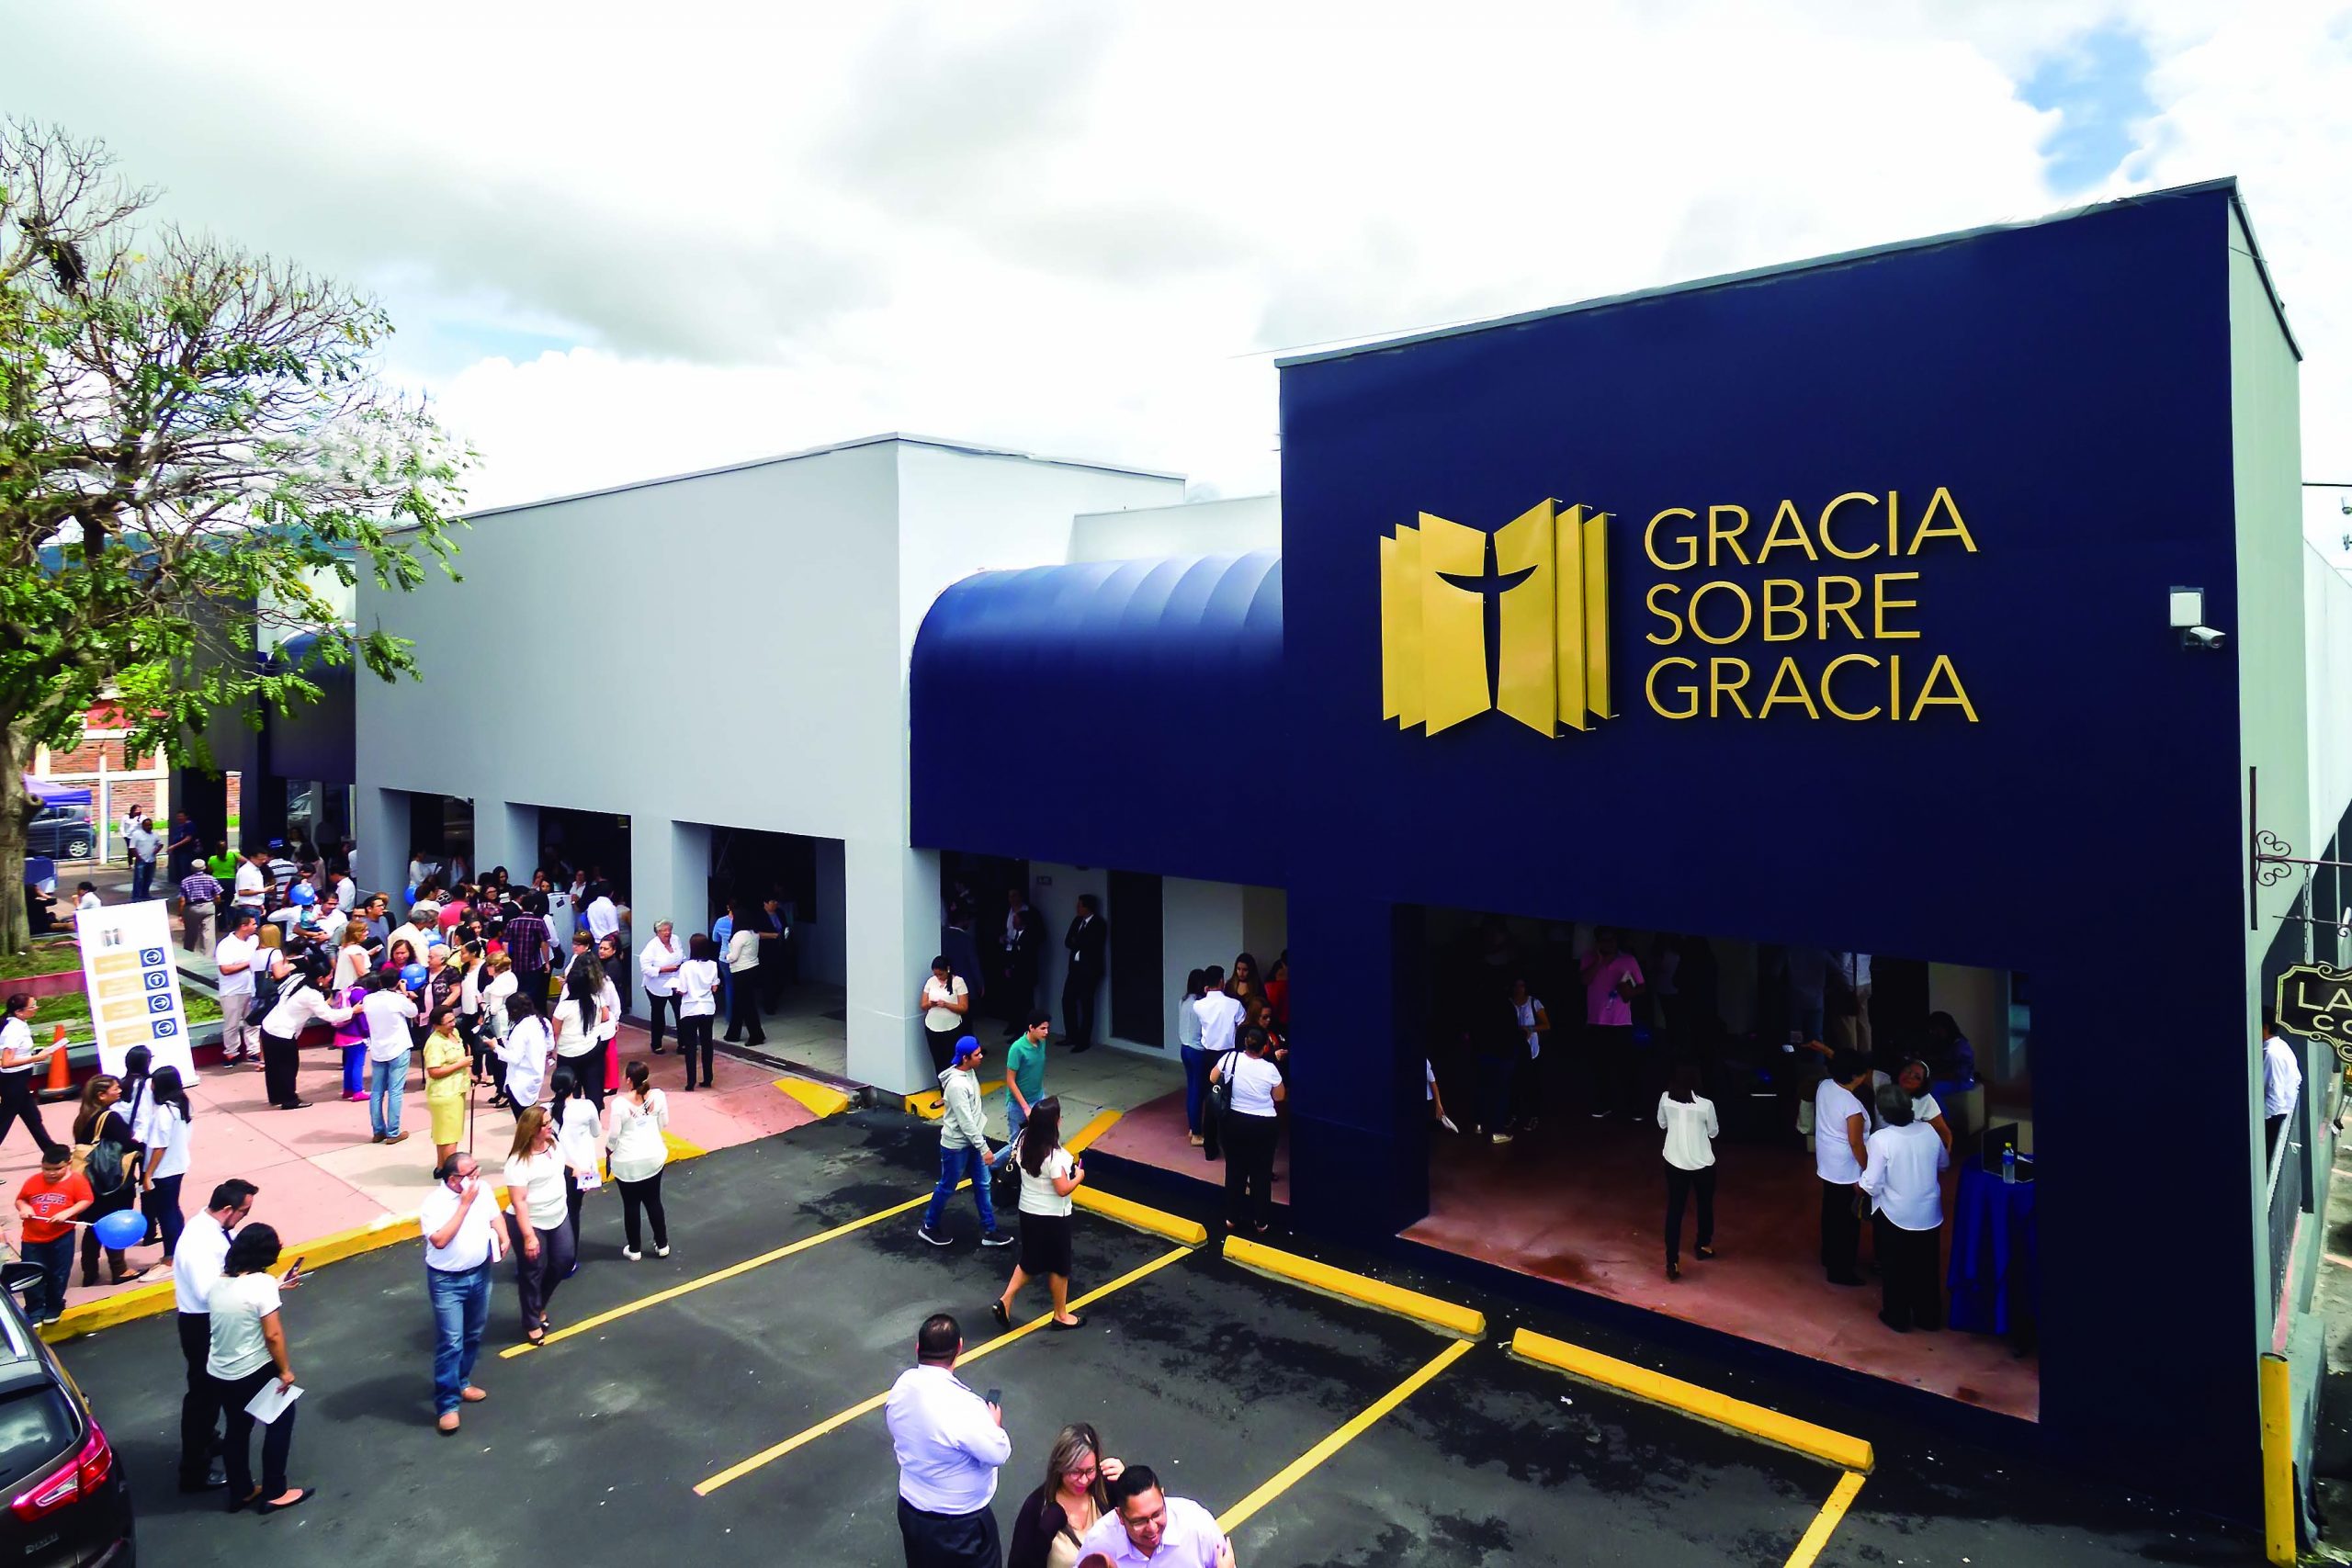 Antes CIA El Salvador, ahora Iglesia Gracia sobre Gracia | La Prensa  Cristiana